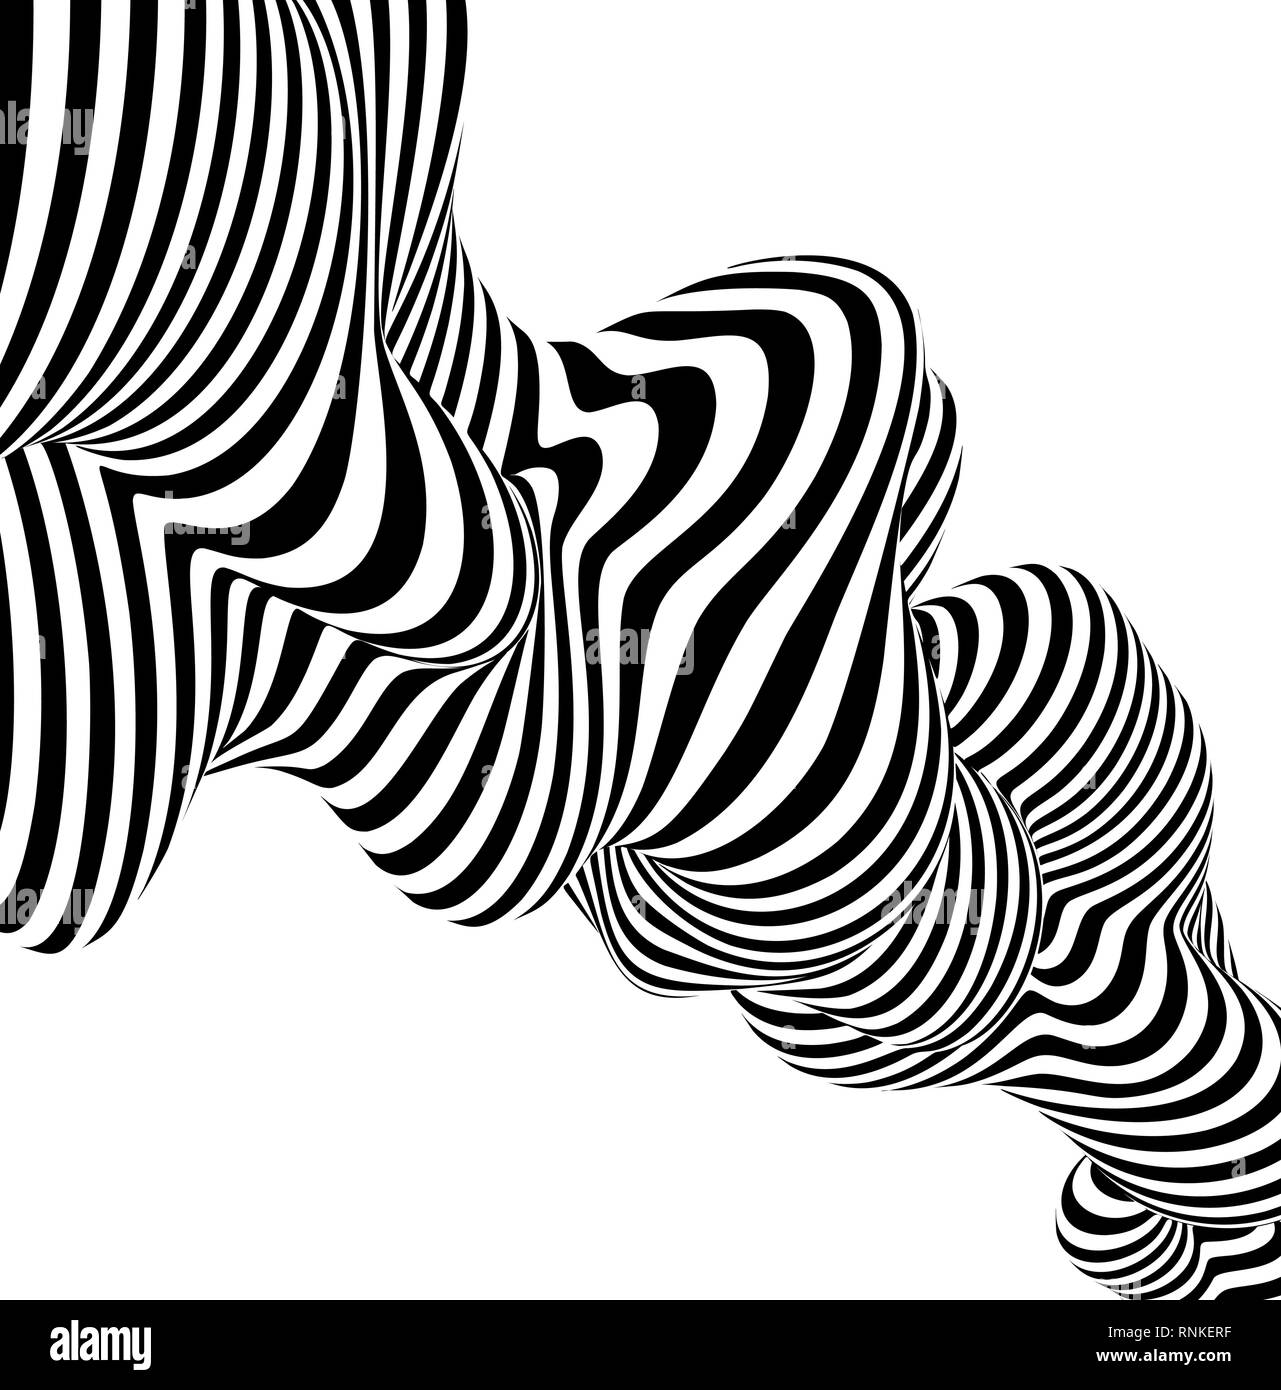 Abstrakte gestreiften Hintergrund wave Design schwarz-weiße Linie. Vector Illustration Stock Vektor